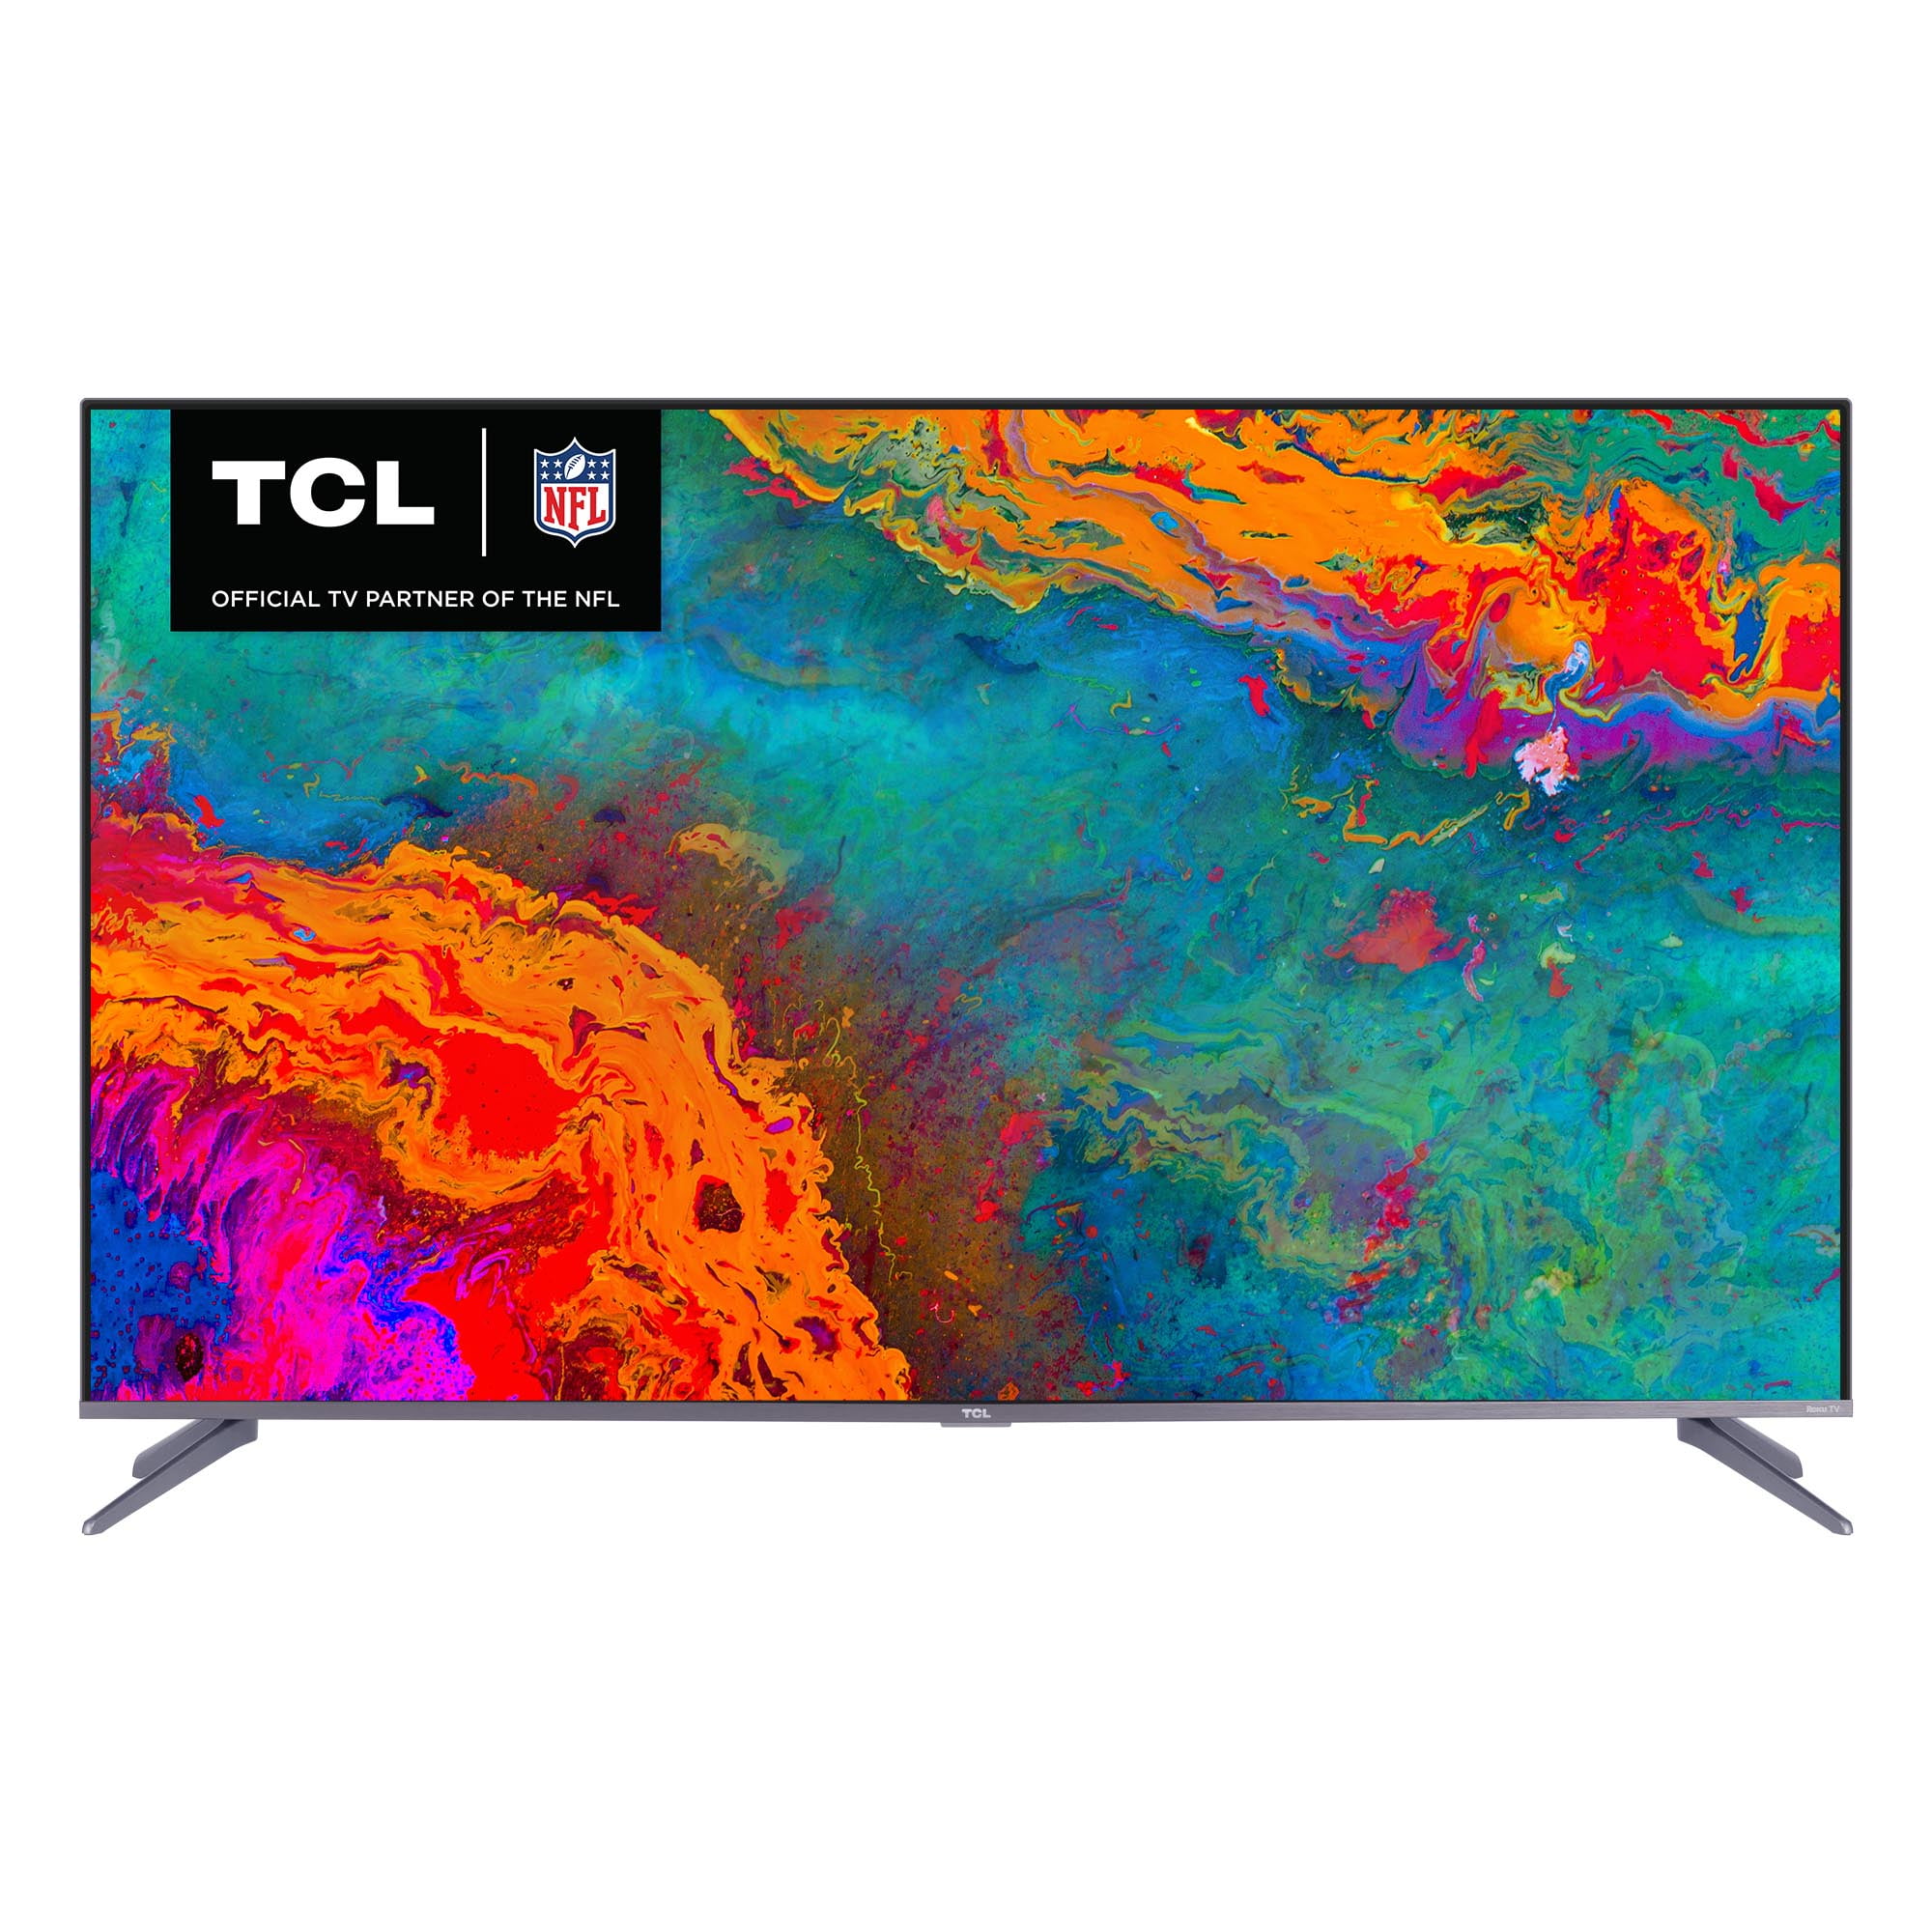 TCL 65" Class 5-Series 4K UHD QLED Dolby Vision HDR Roku Smart TV - 65S531 - Walmart.com